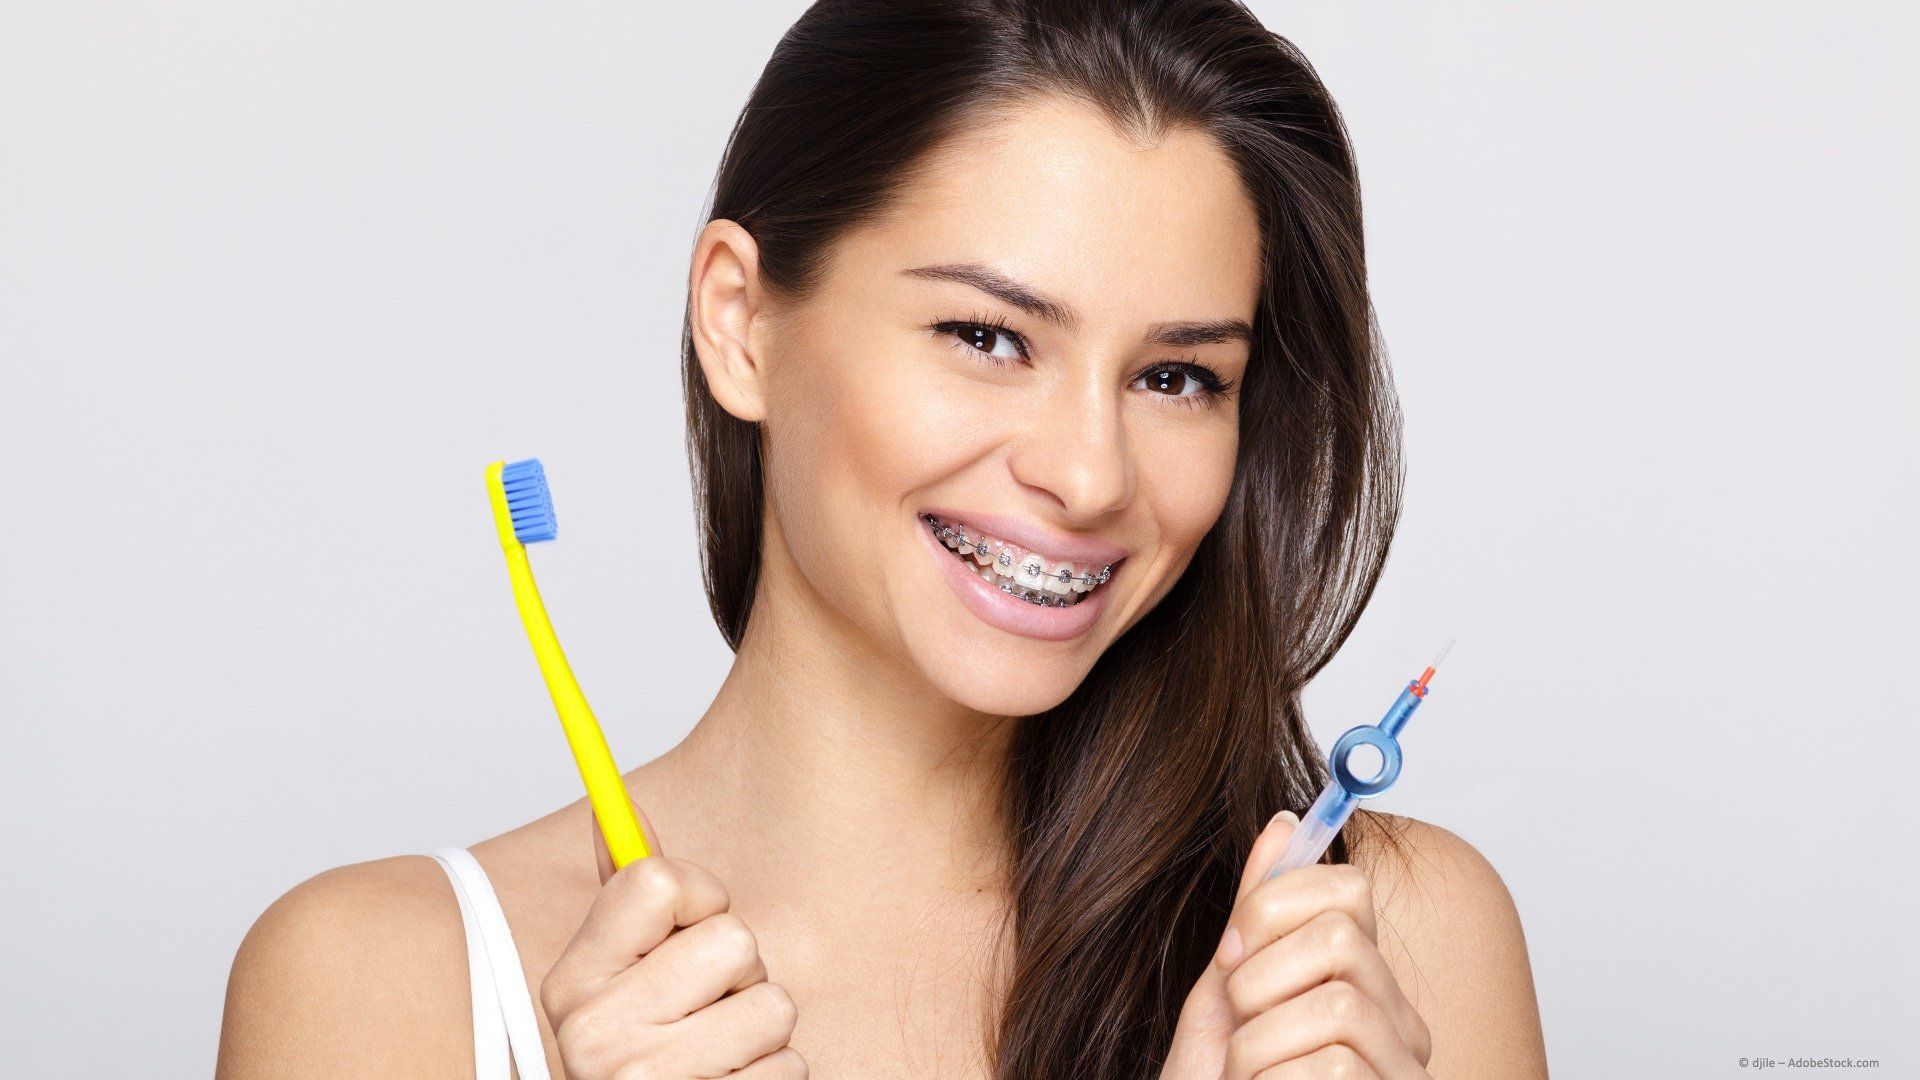 Zahnbürste und Ortho-Bürstchen für die Pflege von Zähnen und Zahnspangen